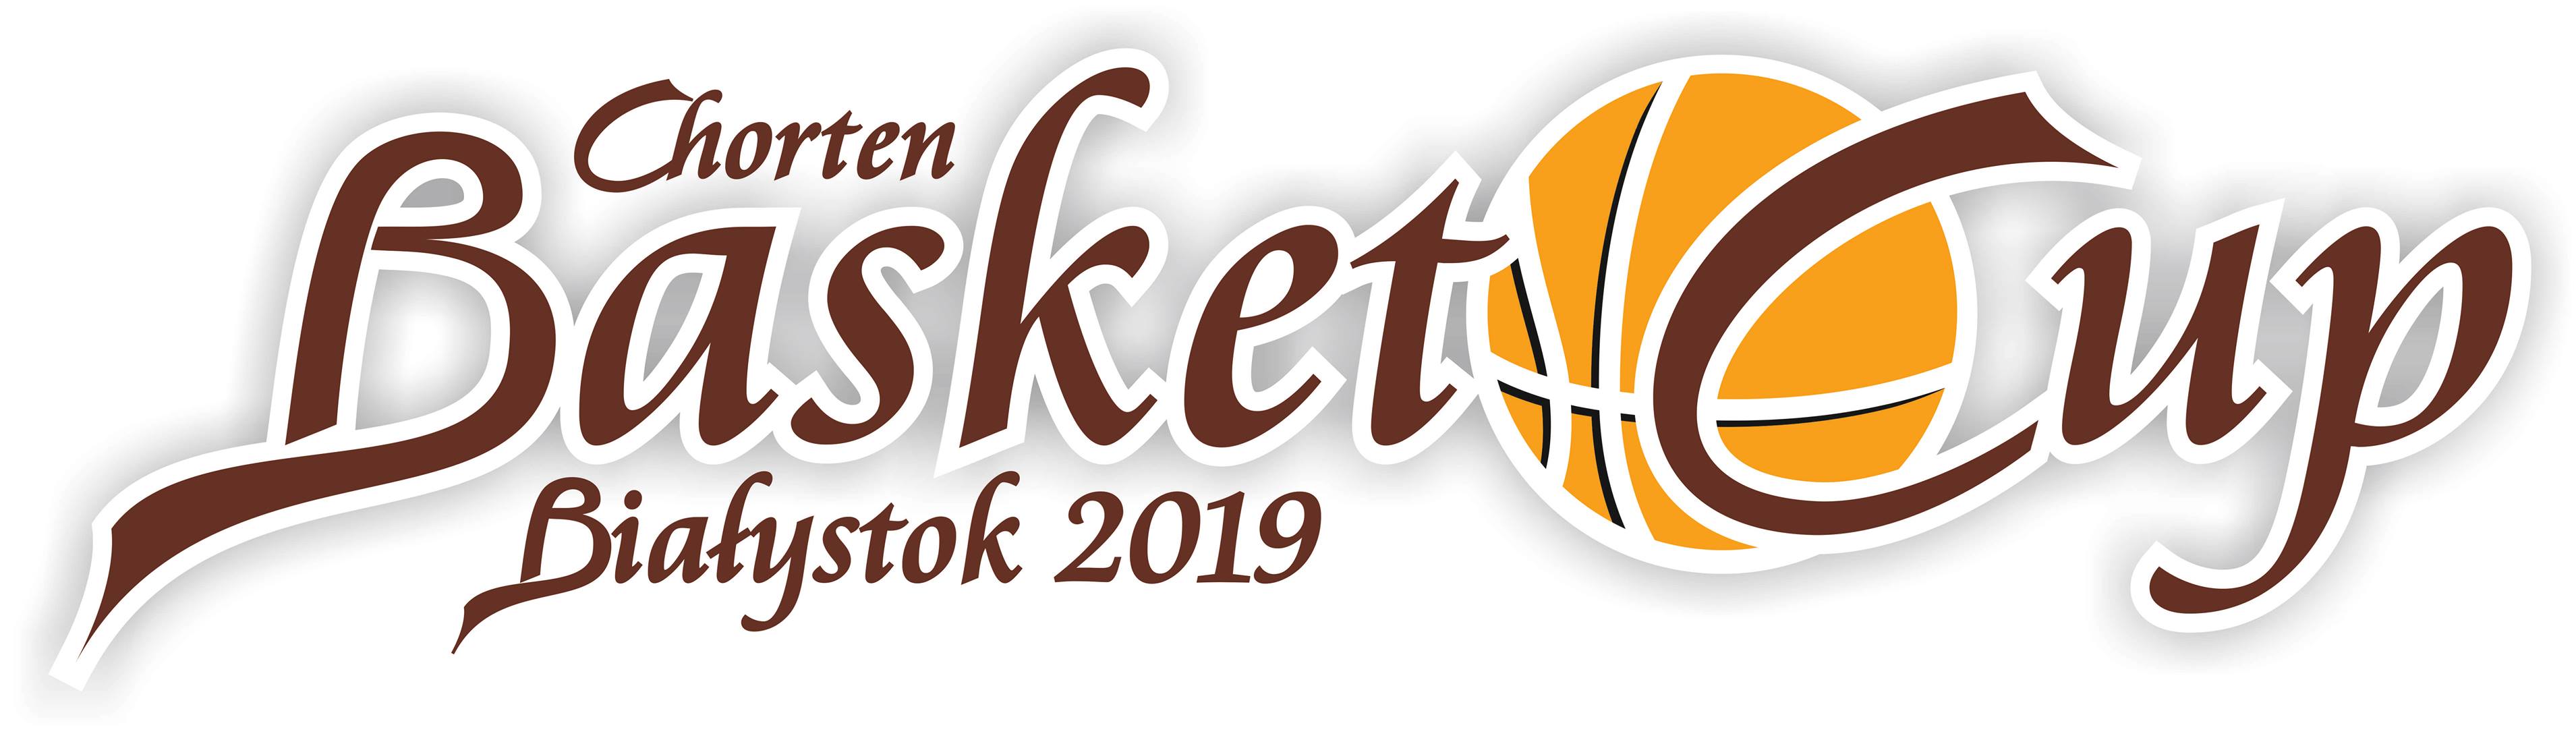 Mistrzostwa Polski Szkól Postawowych - Chorten Basket Cup 2019 - Bialystok